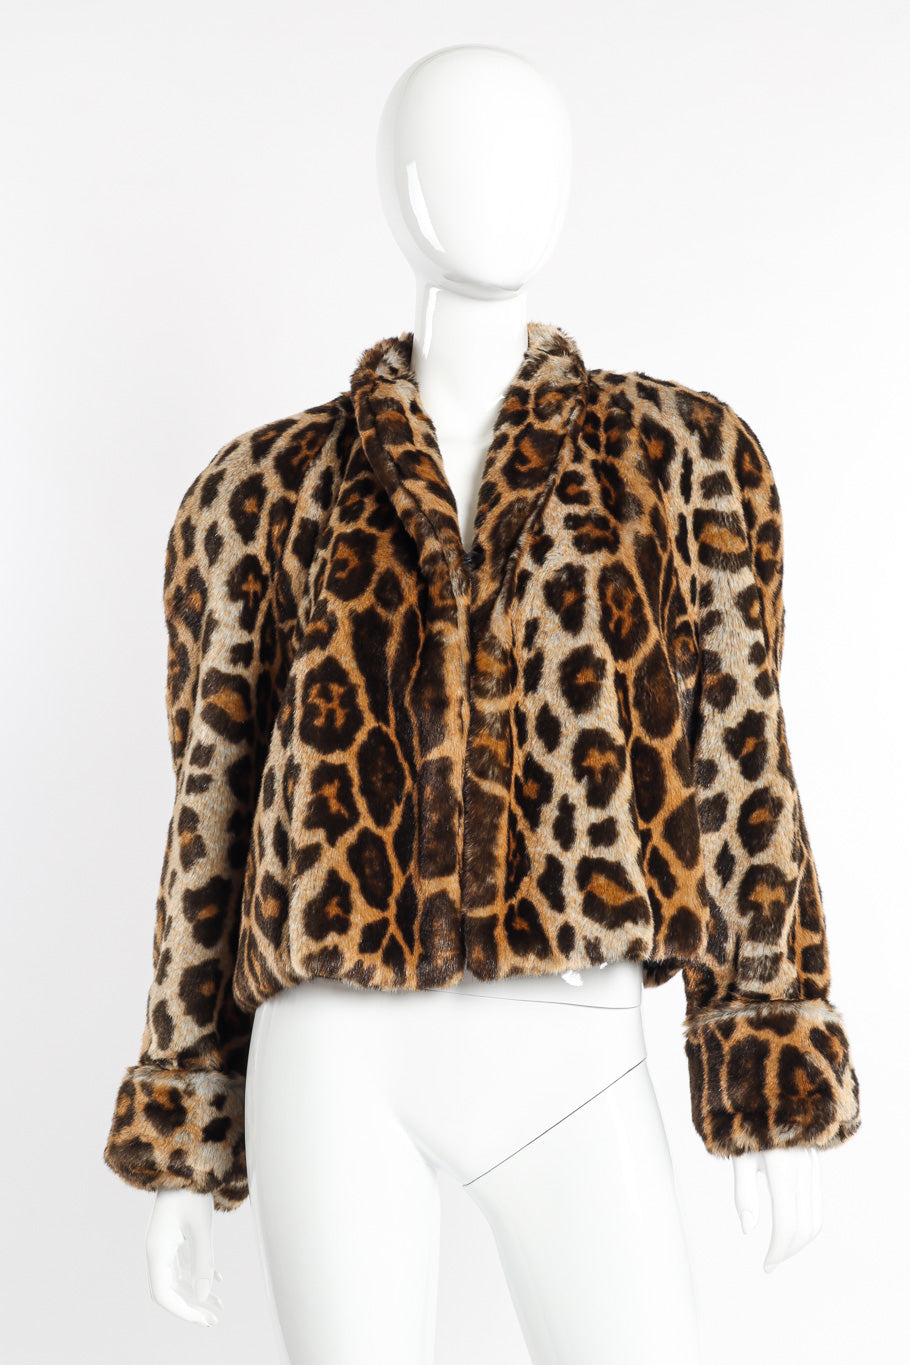 Vintage Mondi Leopard Print Faux Fur Jacket front view on mannequin @recessla